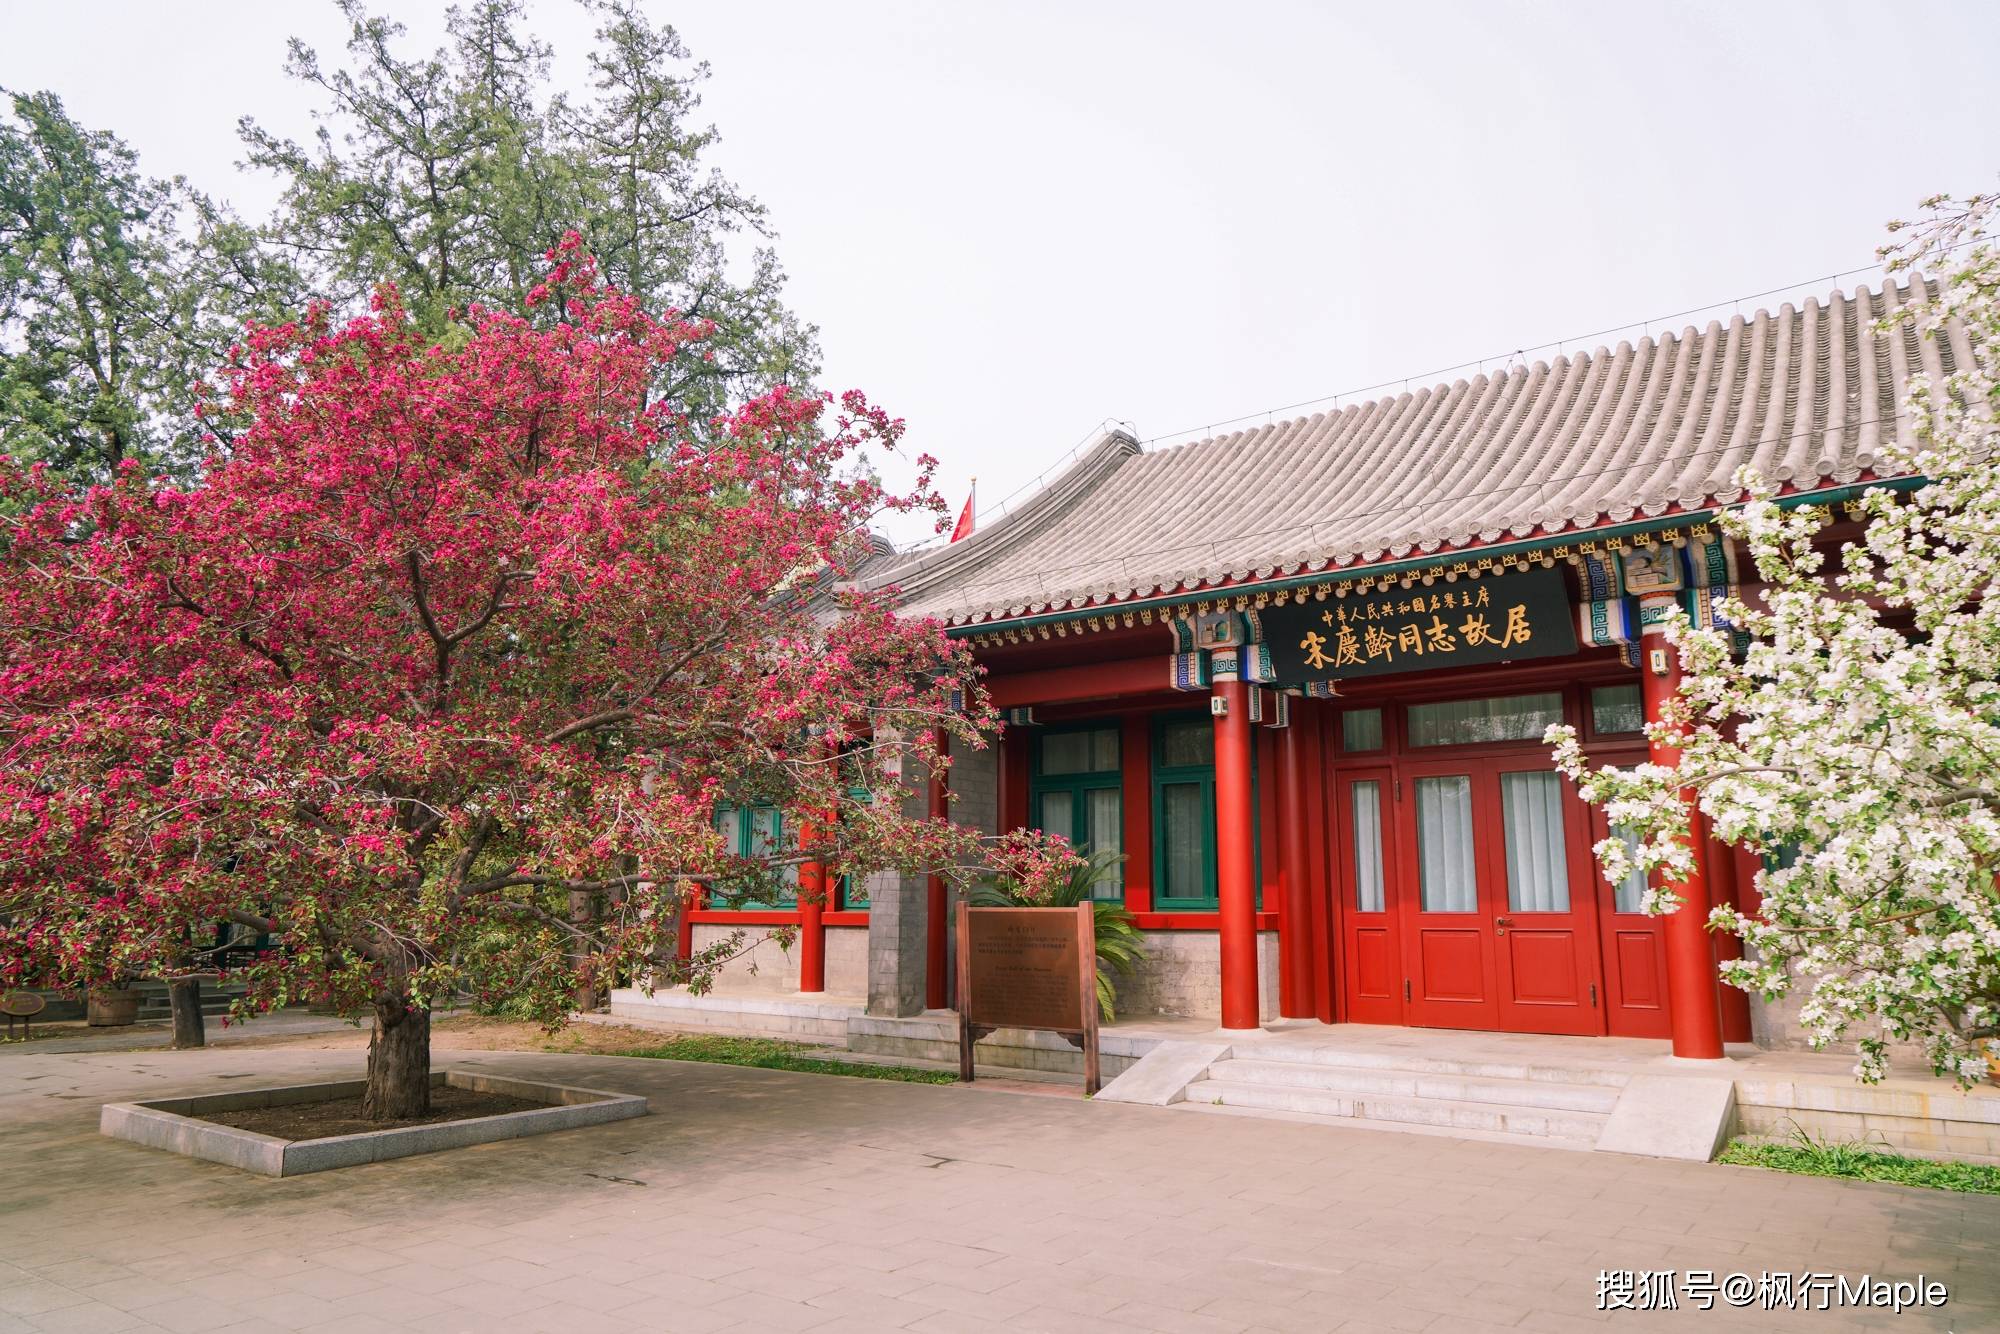 藏在宋庆龄故居里的最美十大树王之一,这对西府海棠四月已满开